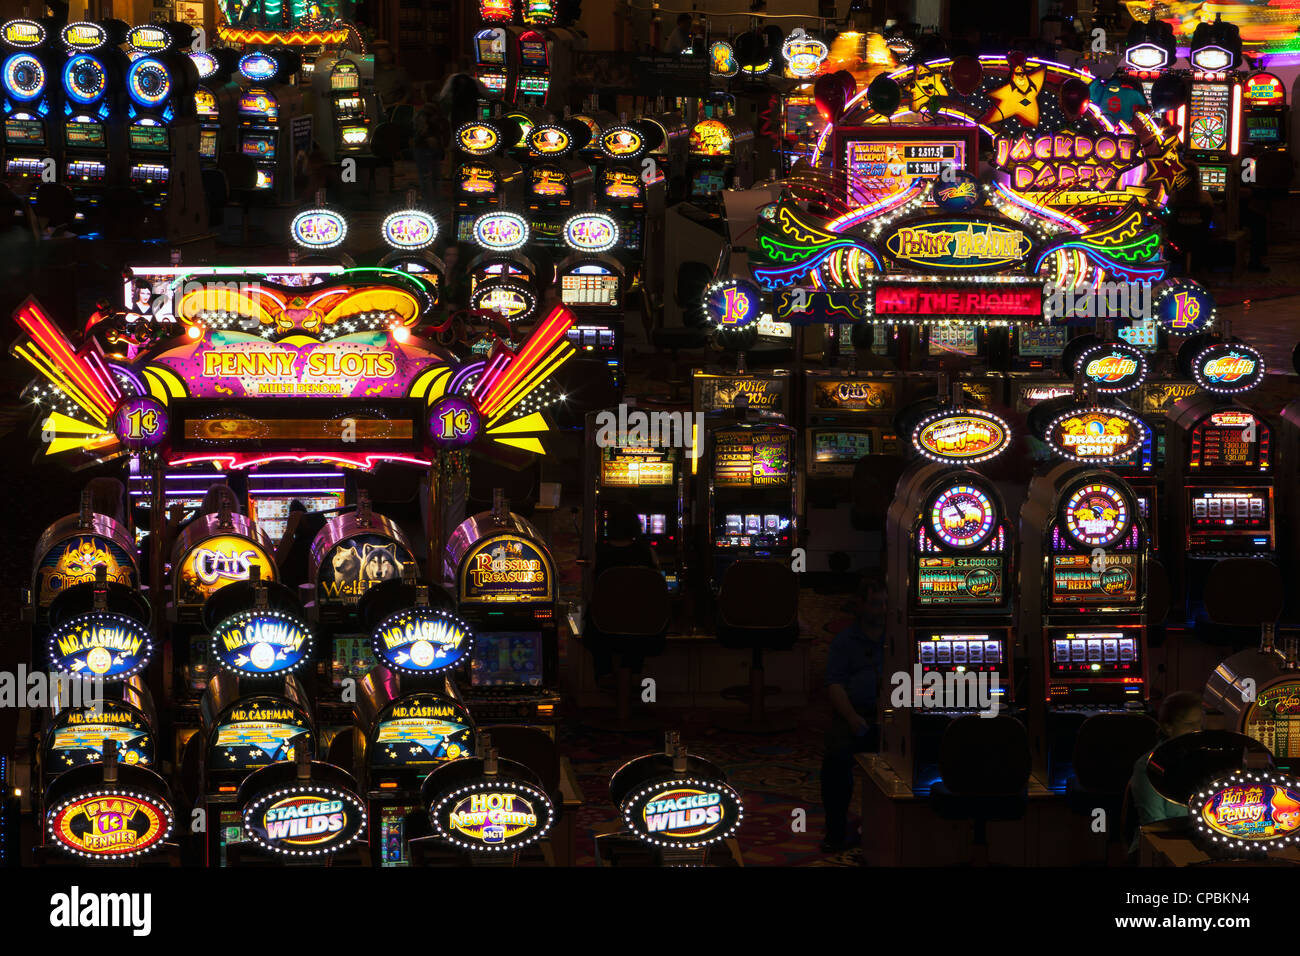 Jeux de machines à sous et jeux de hasard dans une sombre salle de casino, Las Vegas, Nevada. Jouer les touristes et l'espoir de gagner. Banque D'Images